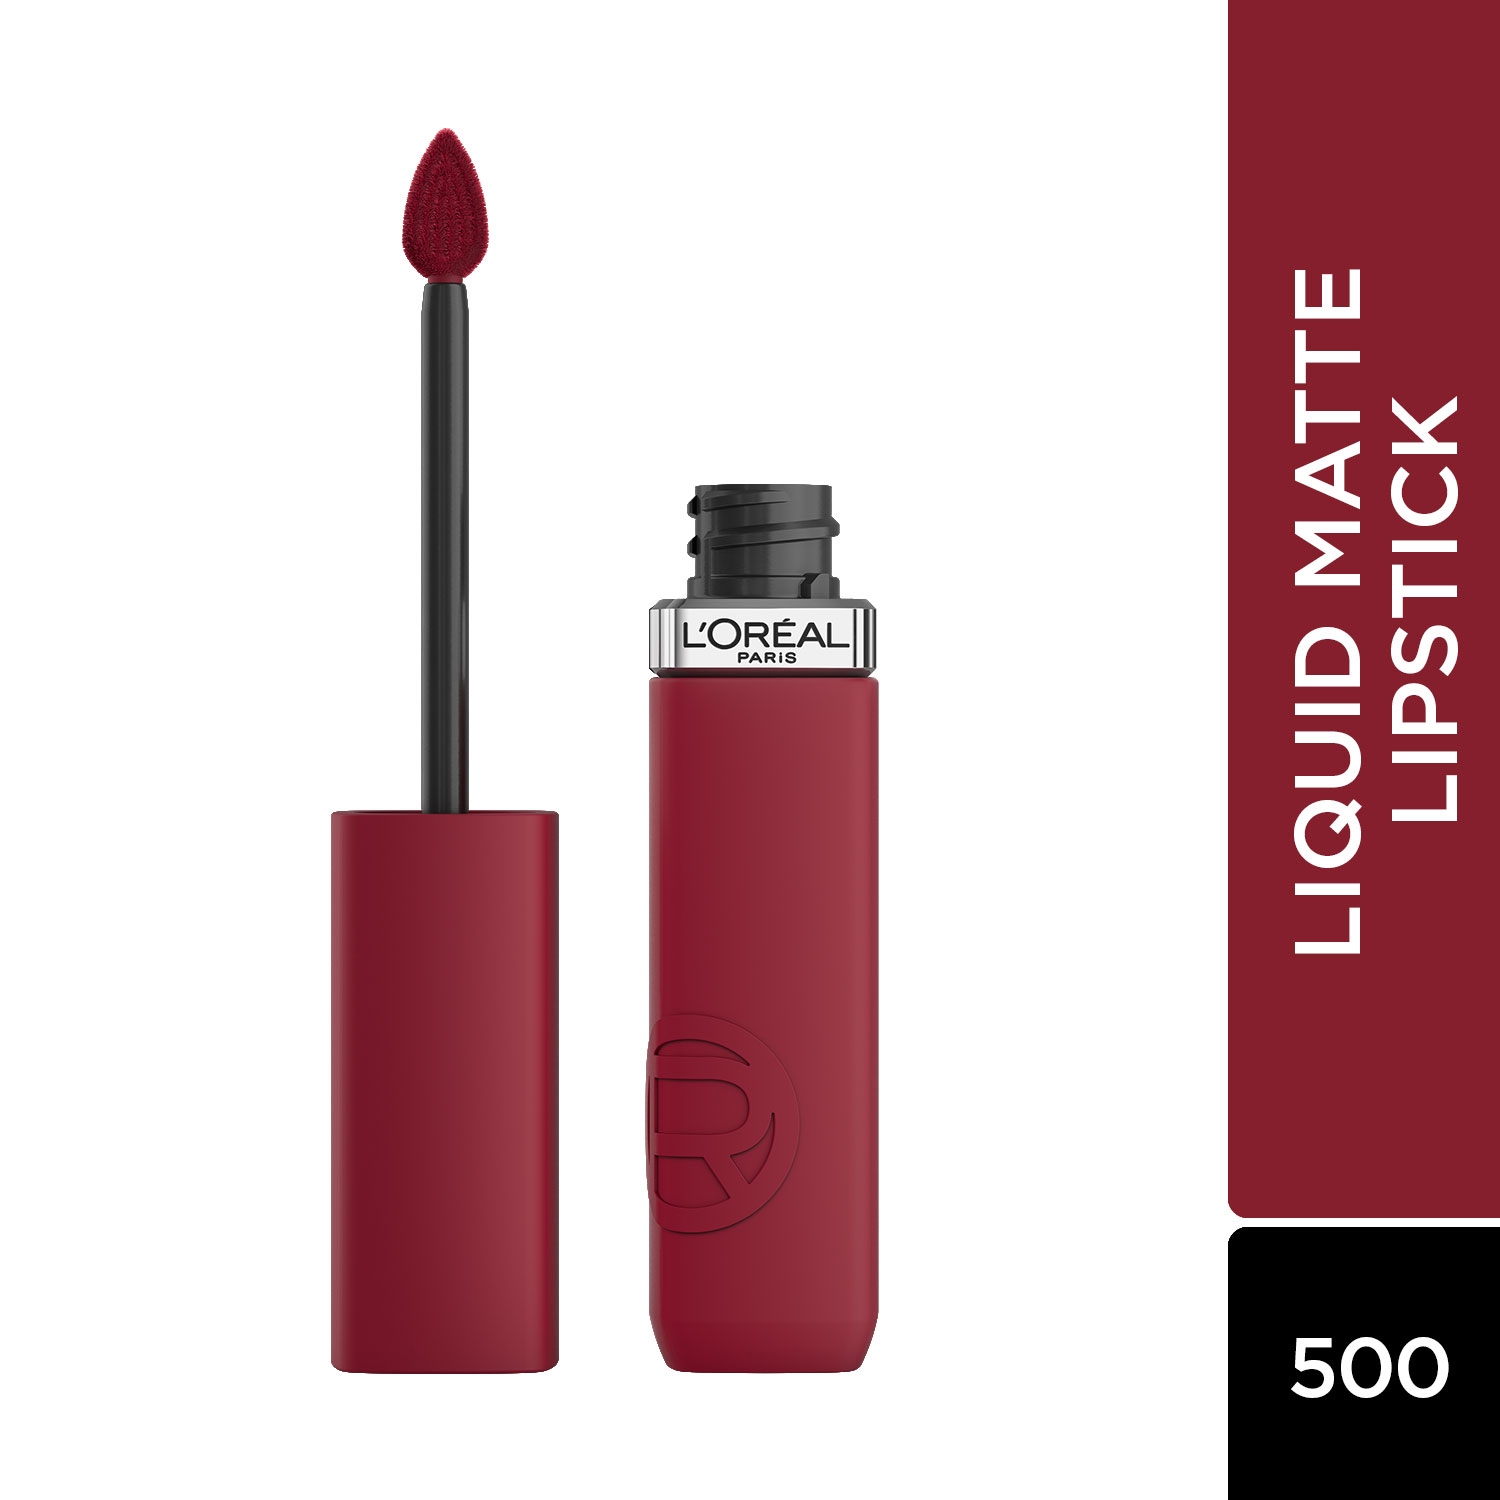 L'Oreal Paris | L'Oreal Paris Infallible Matte Resistance Liquid Lipstick - 500 Wine Not? (5ml)